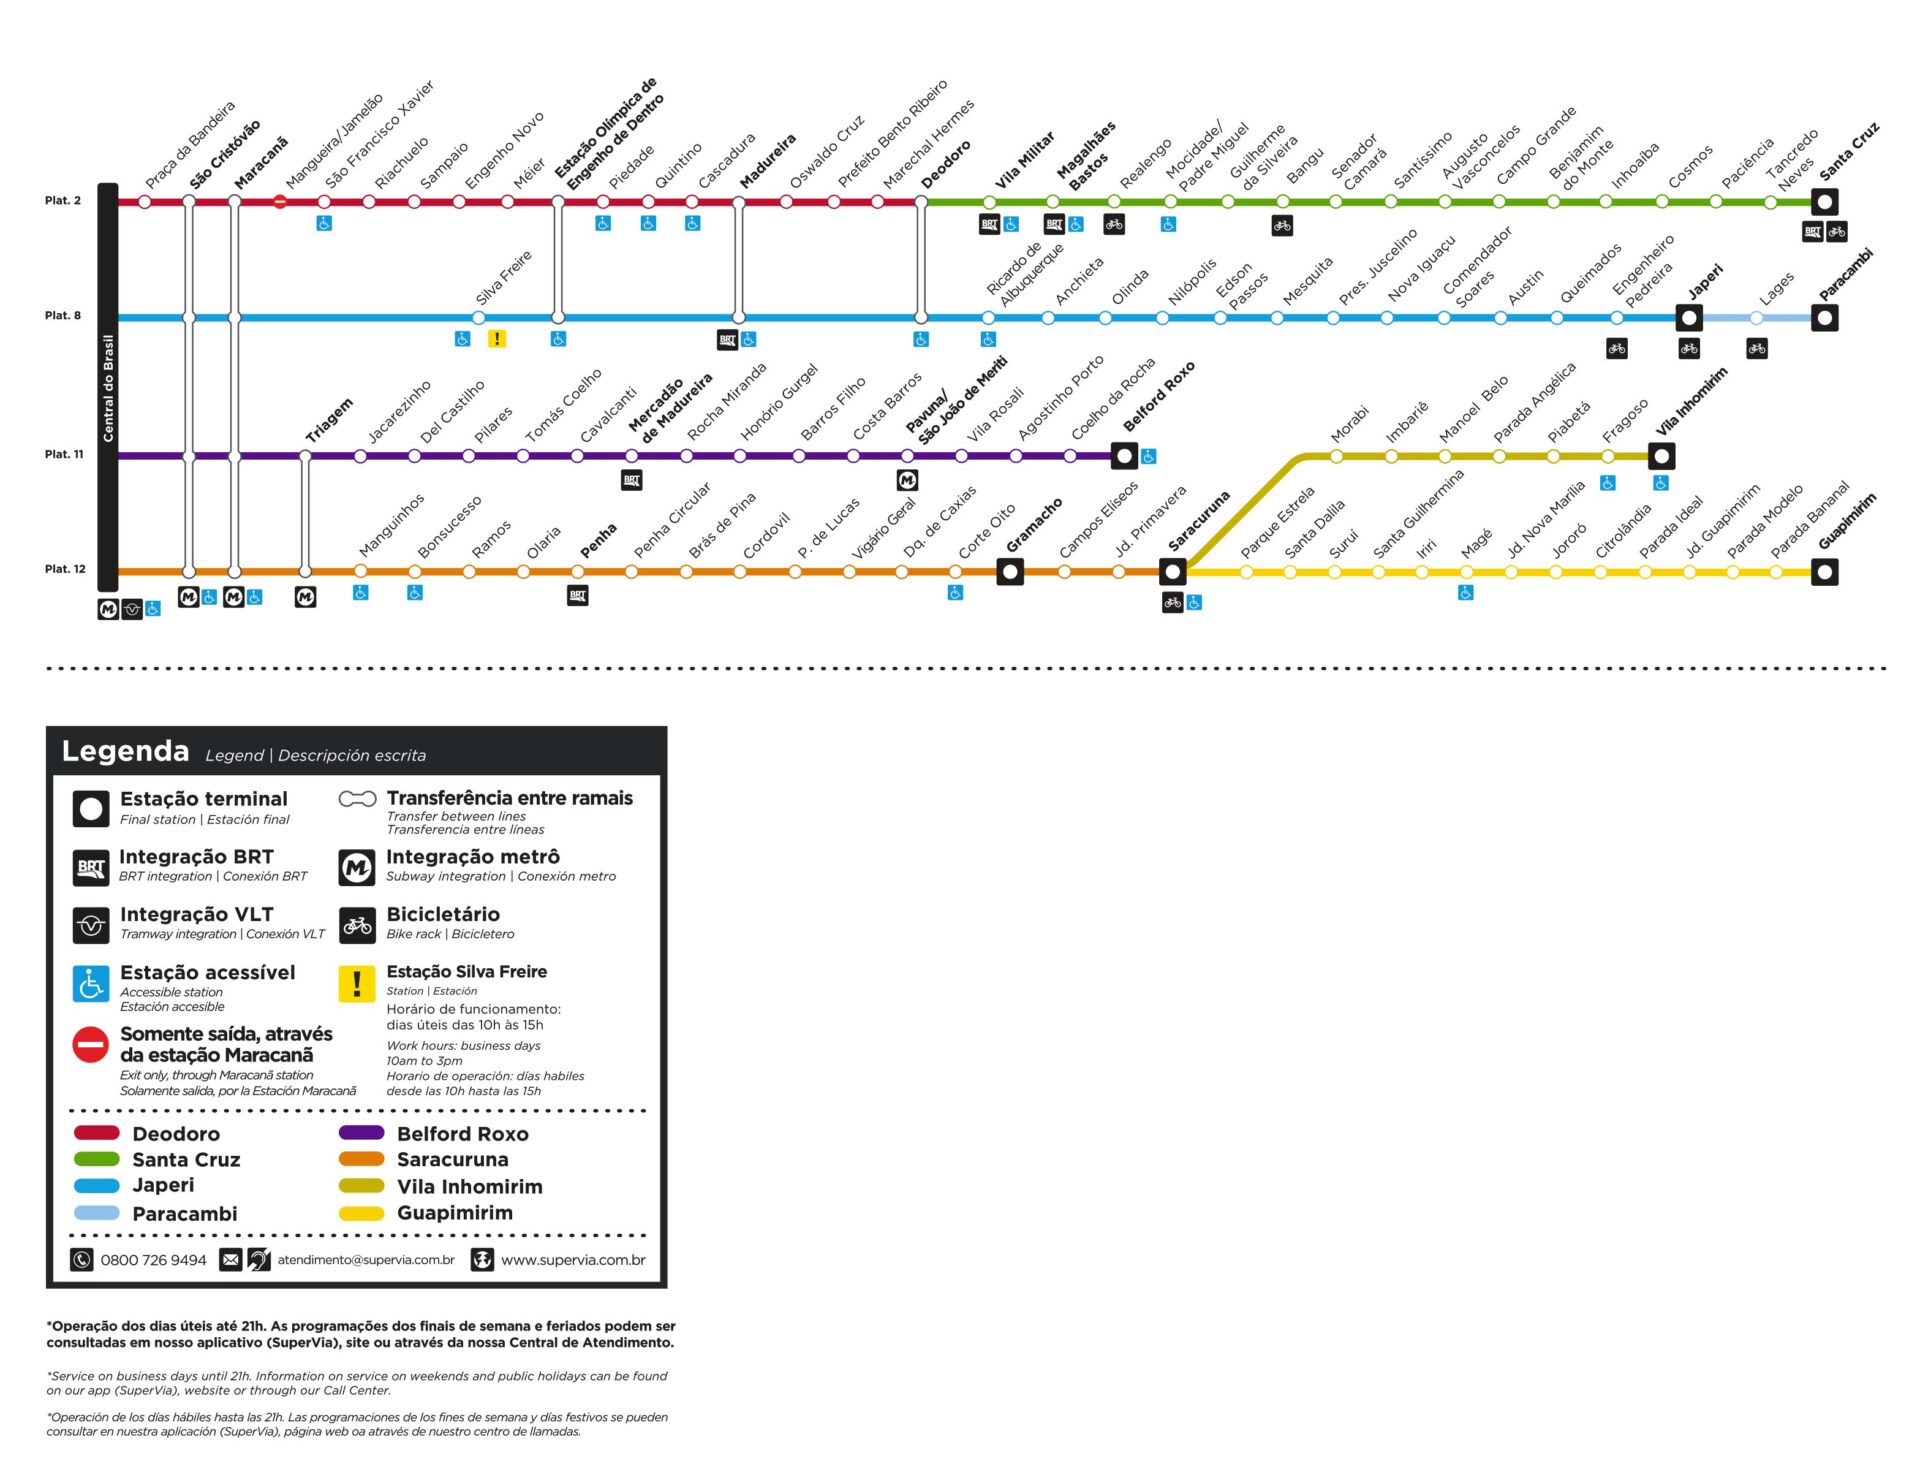 Mapa da rede de metrô e Trem do estado do Rio de Janeiro